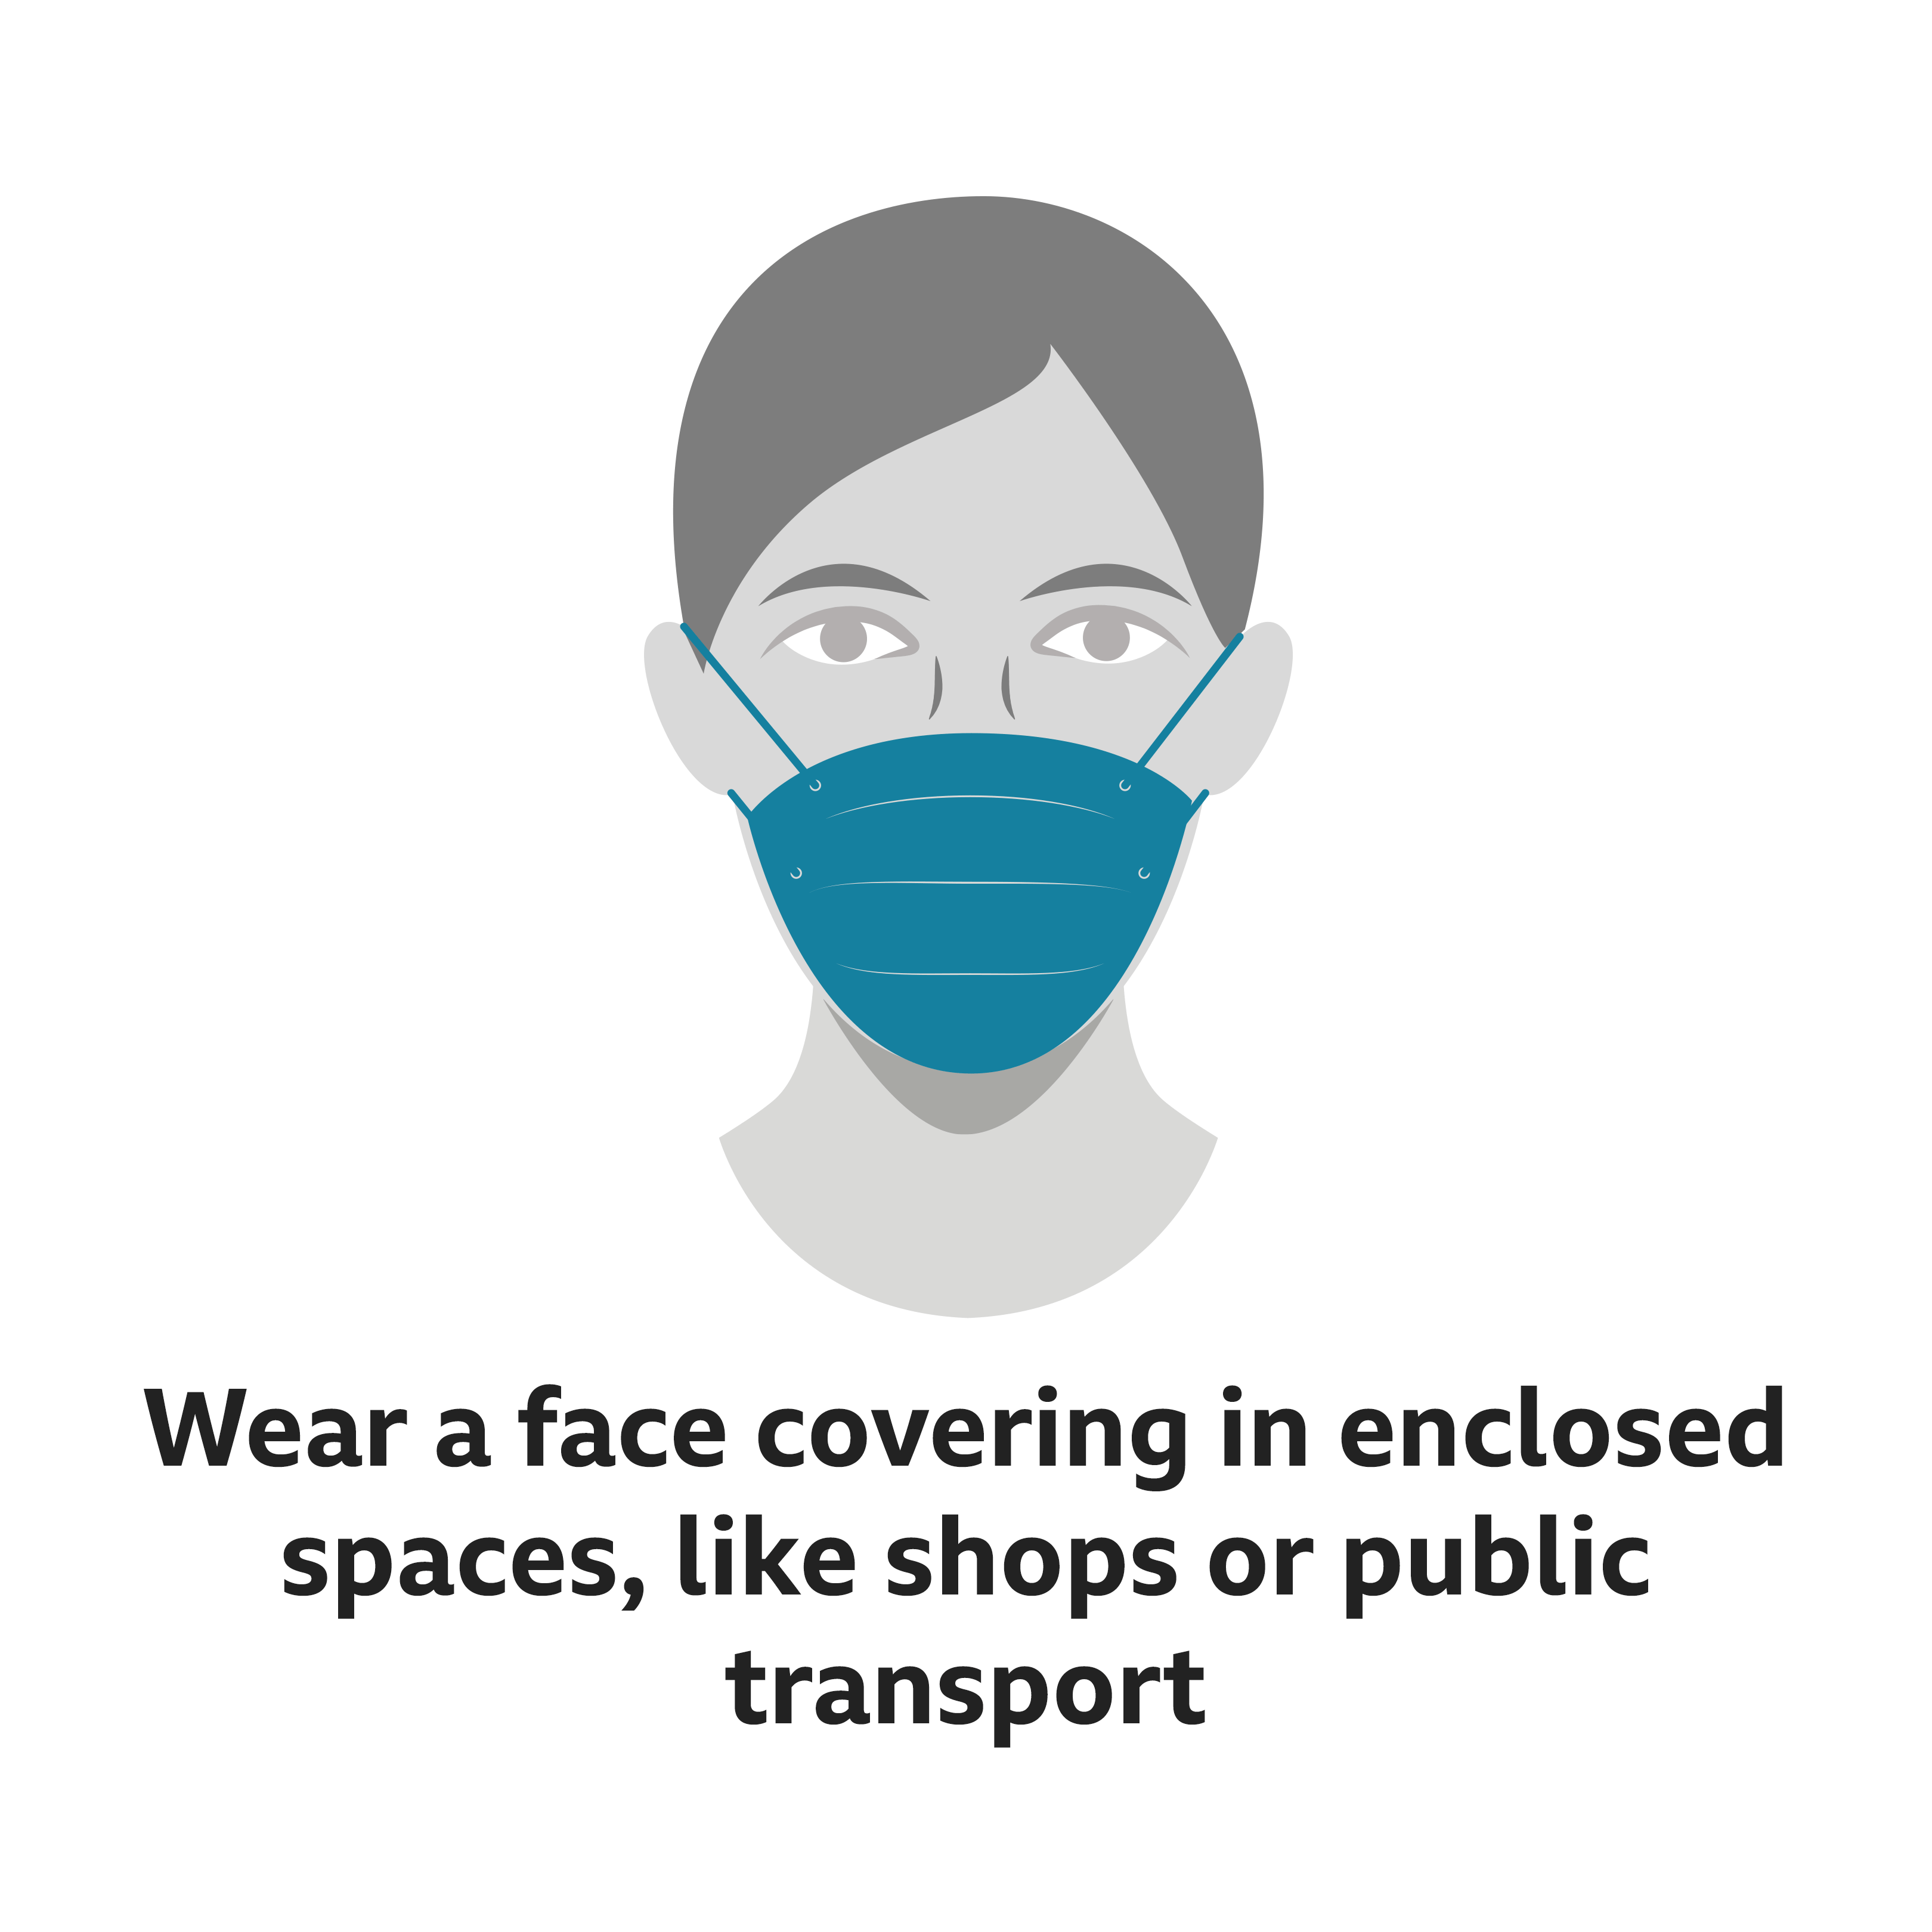 На изображении изображена женщина, носящая маску для лица - и сказано, что ее следует носить в закрытых помещениях, таких как магазины или общественный транспорт